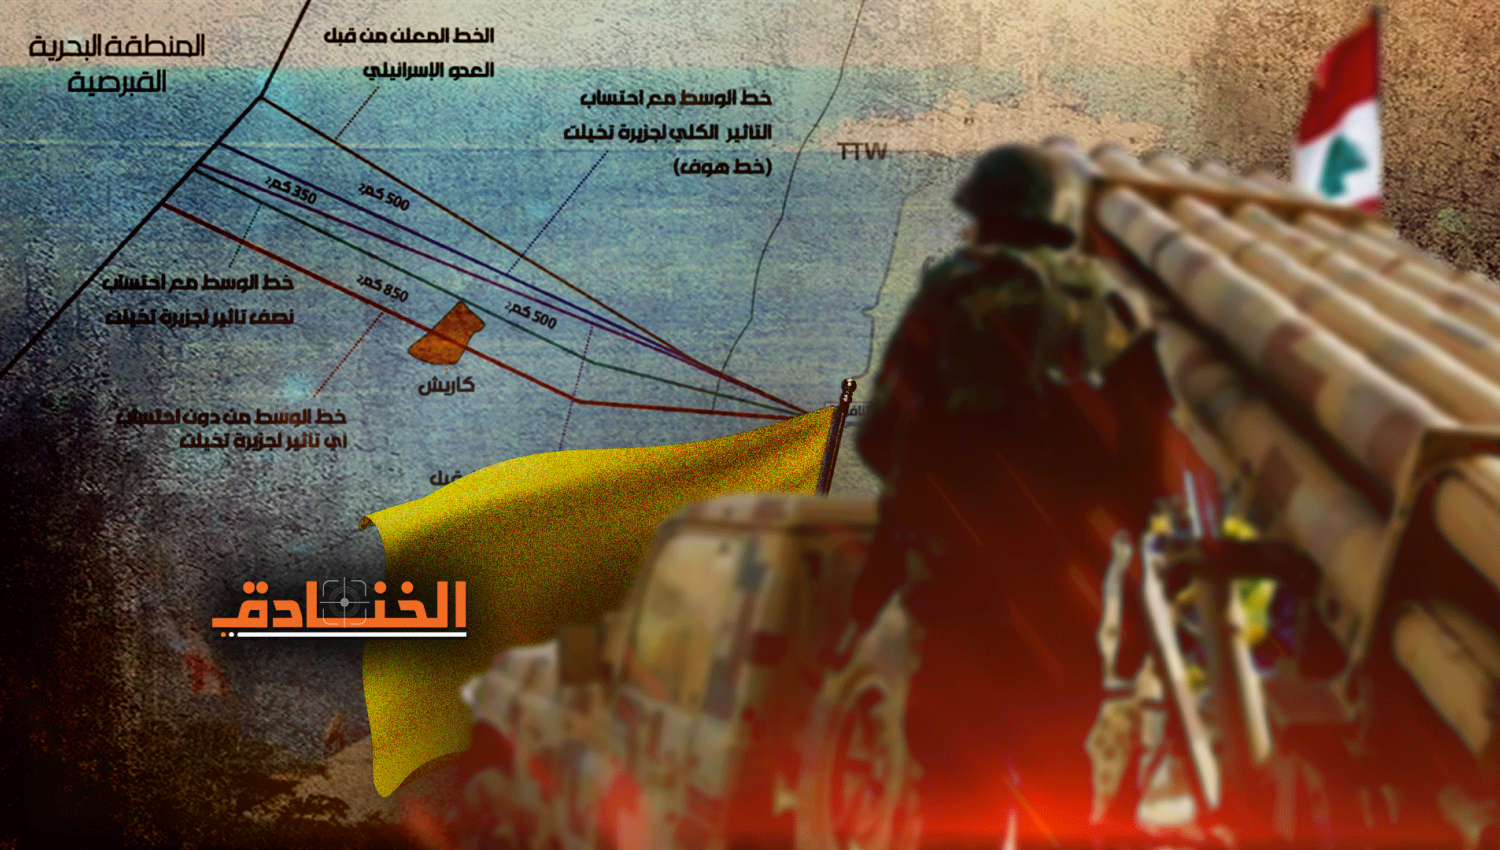 يديعوت أحرنوت: الأحداث تزيد ثقة حزب الله بنفسه 